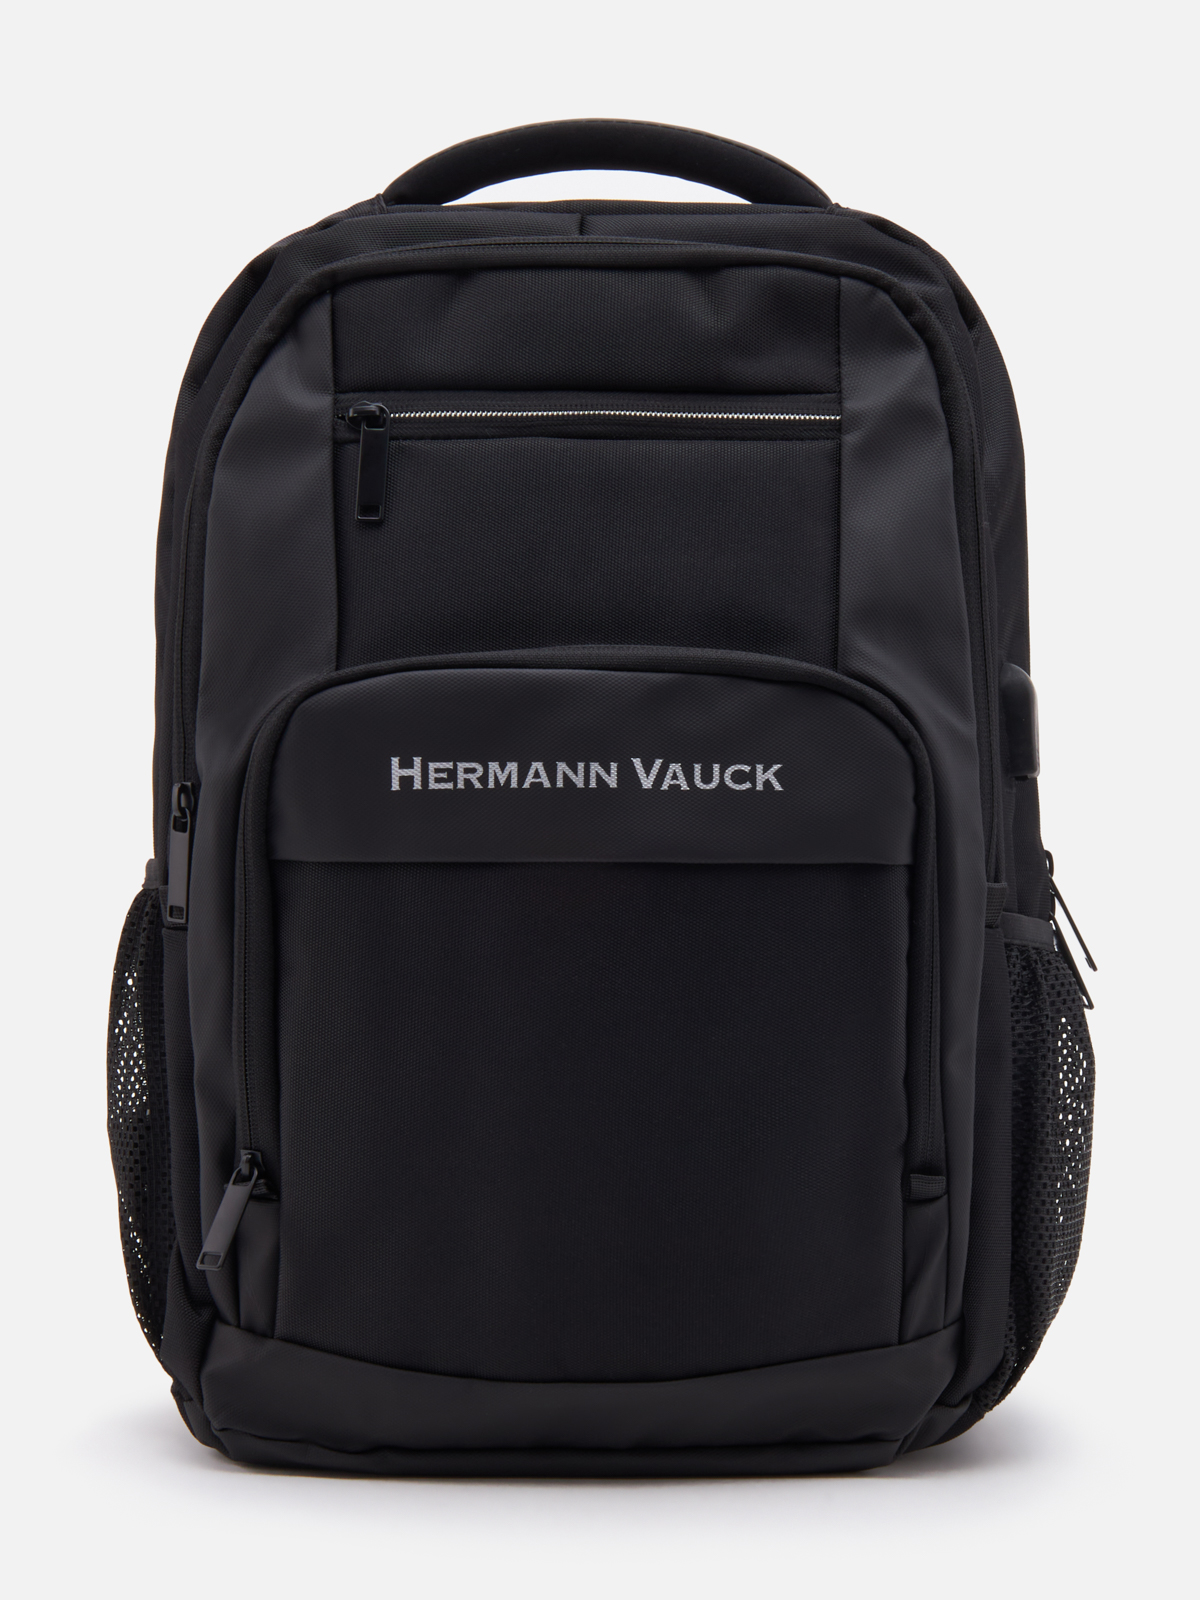 Рюкзак Hermann Vauck для мужчин, чёрный, 32x15x45 см, SUT375 - купить в Мегамаркет Москва Пушкино, цена на Мегамаркет